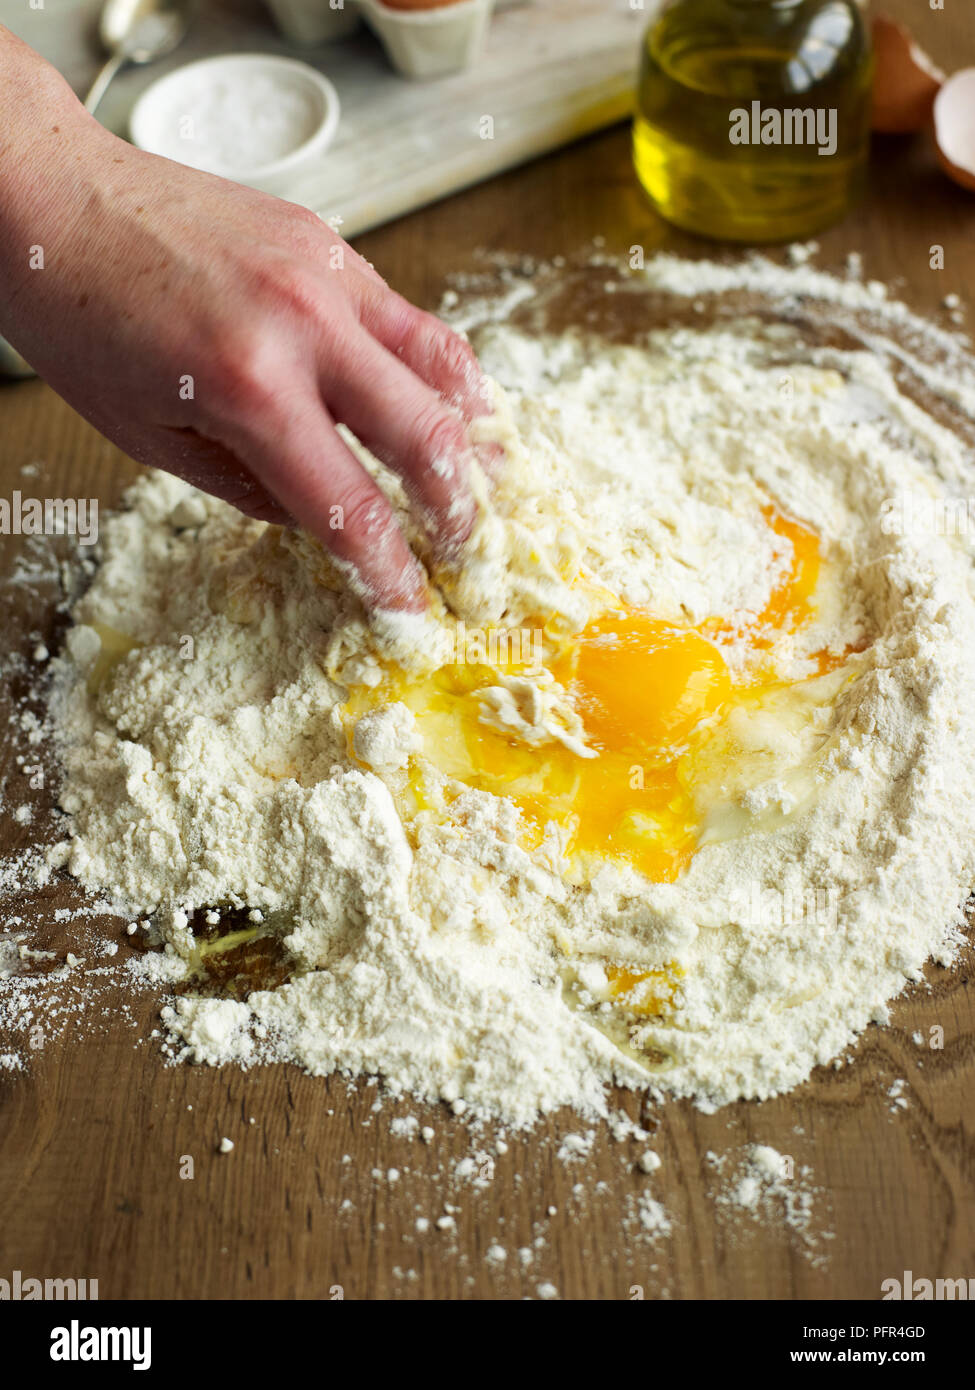 La miscelazione di uovo, olio di oliva e la farina (rendendo la pasta) Foto Stock